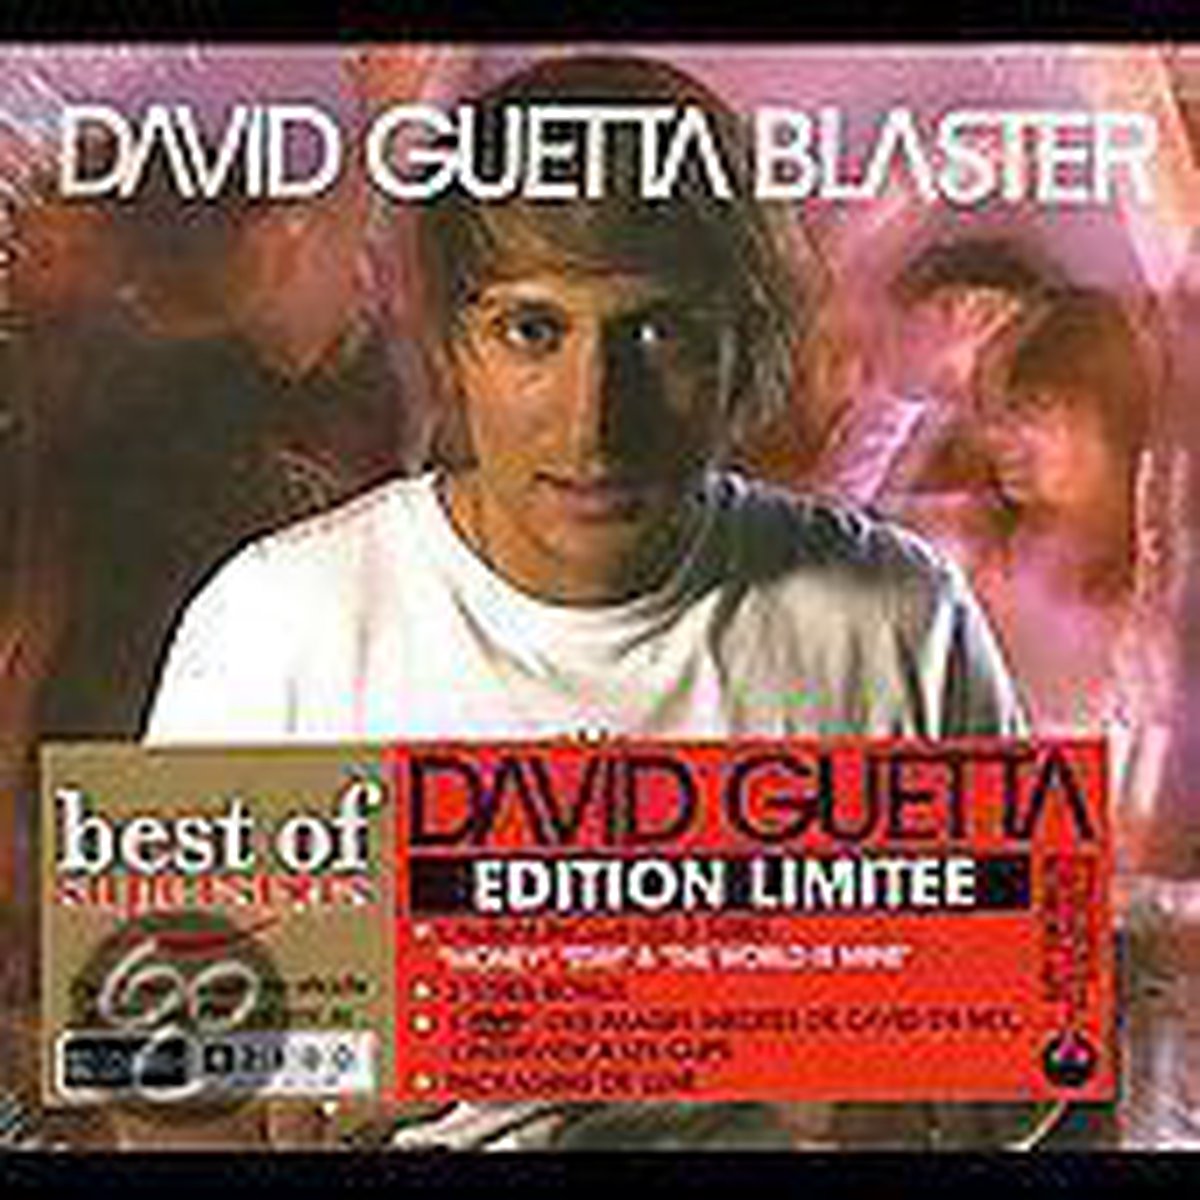 Blaster - David Guetta